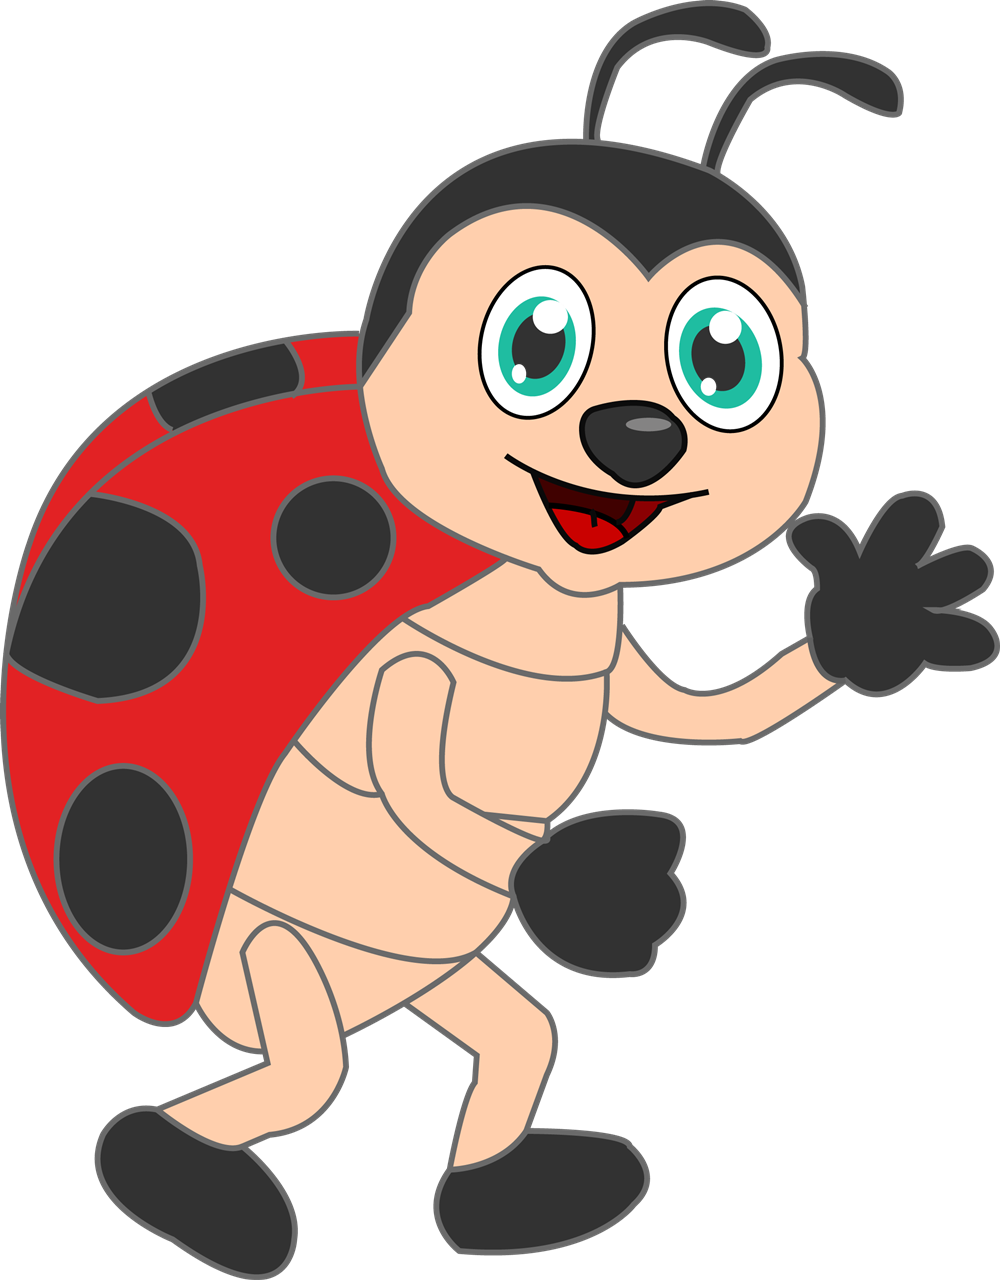 Ladybug free to use cliparts